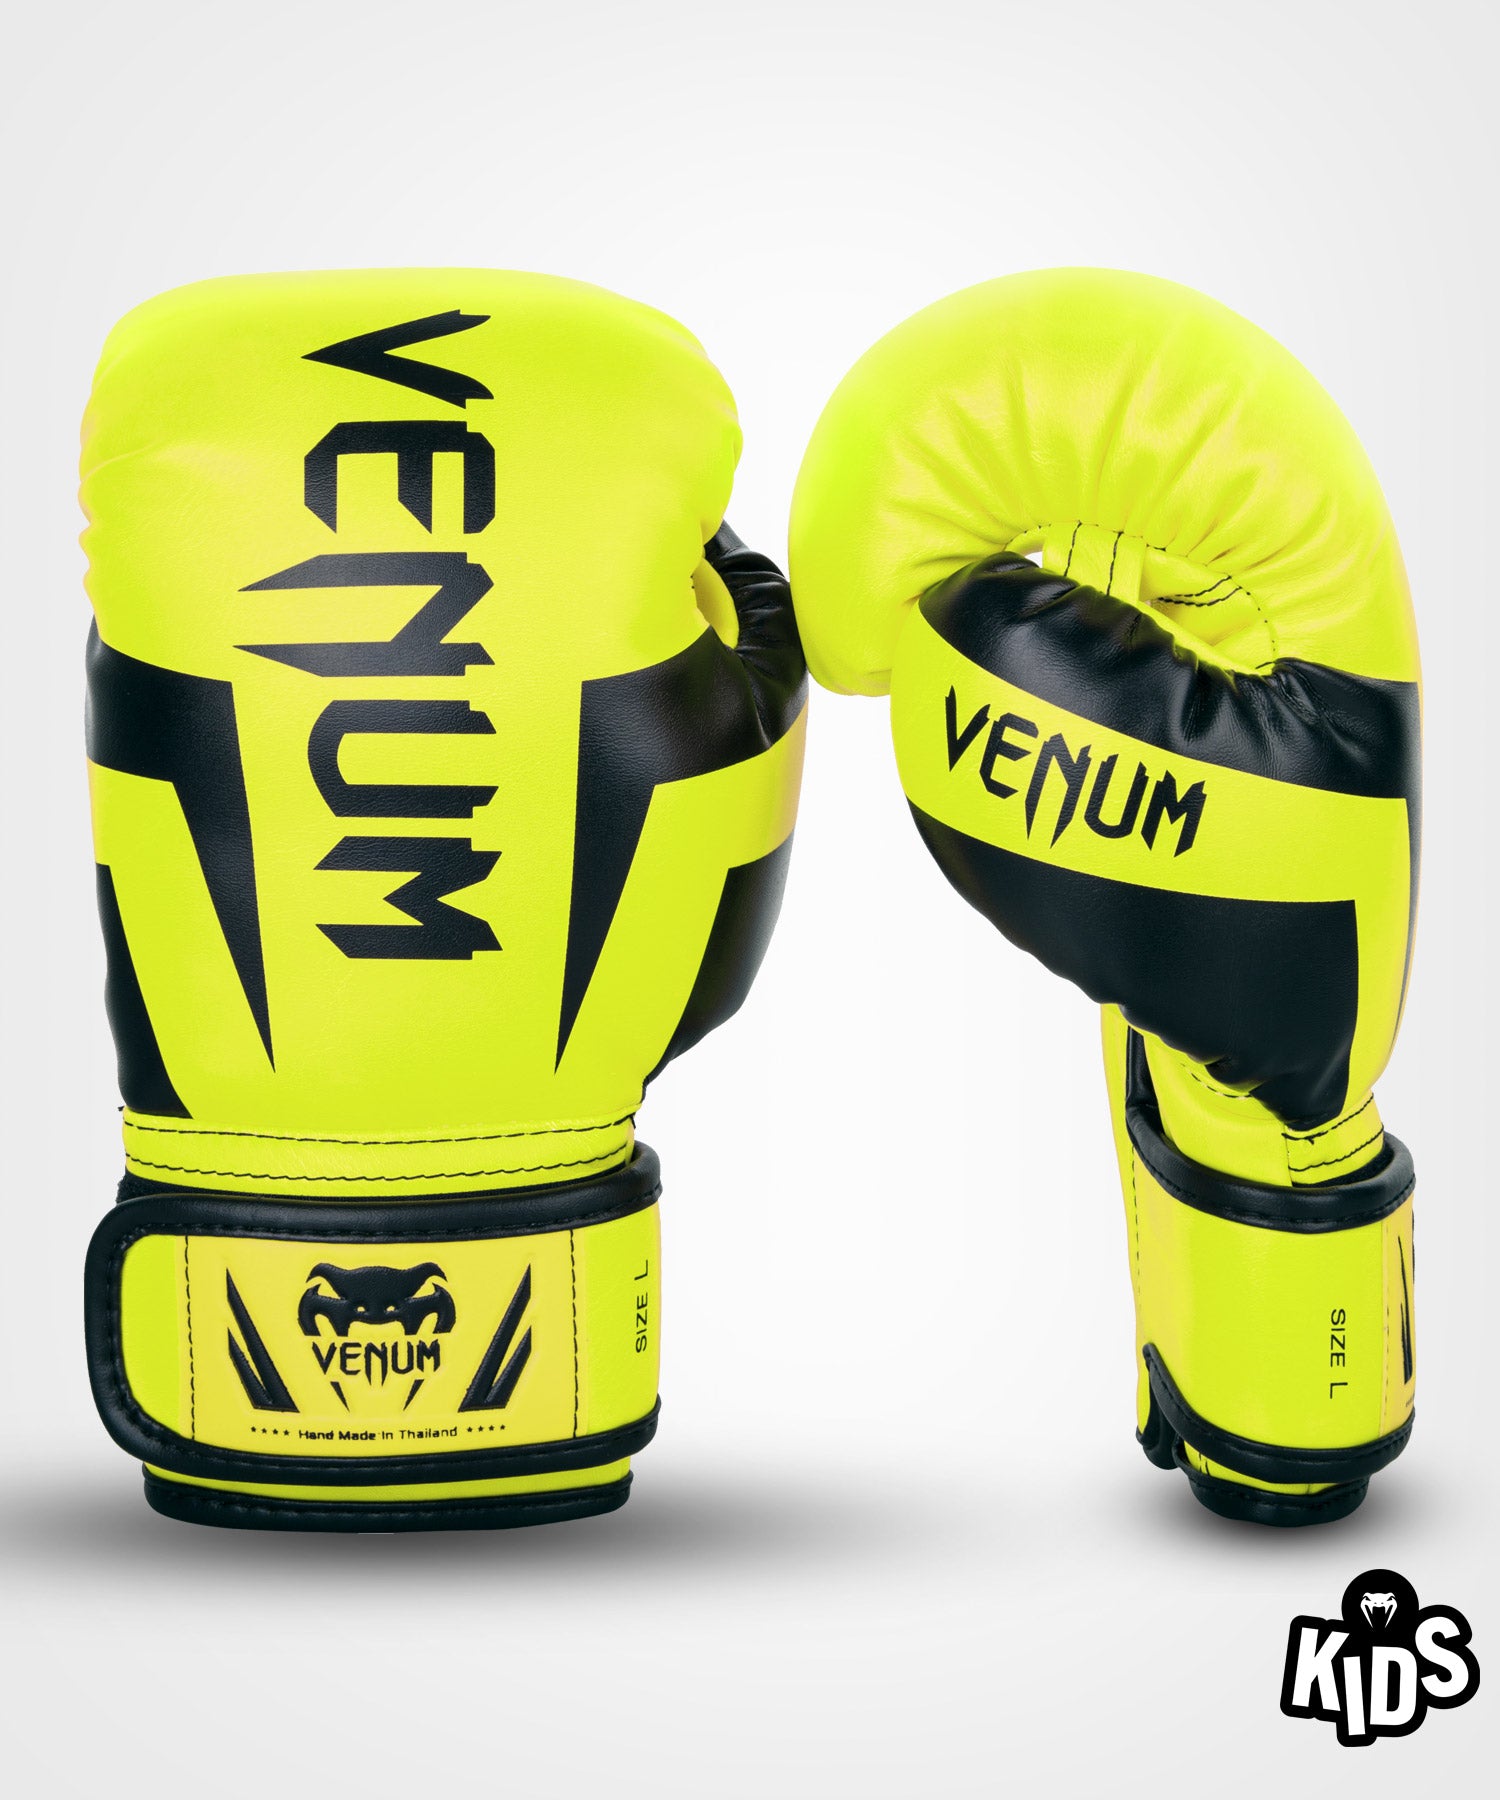 Gants de boxe Venum Elite or / noir > Livraison Gratuite